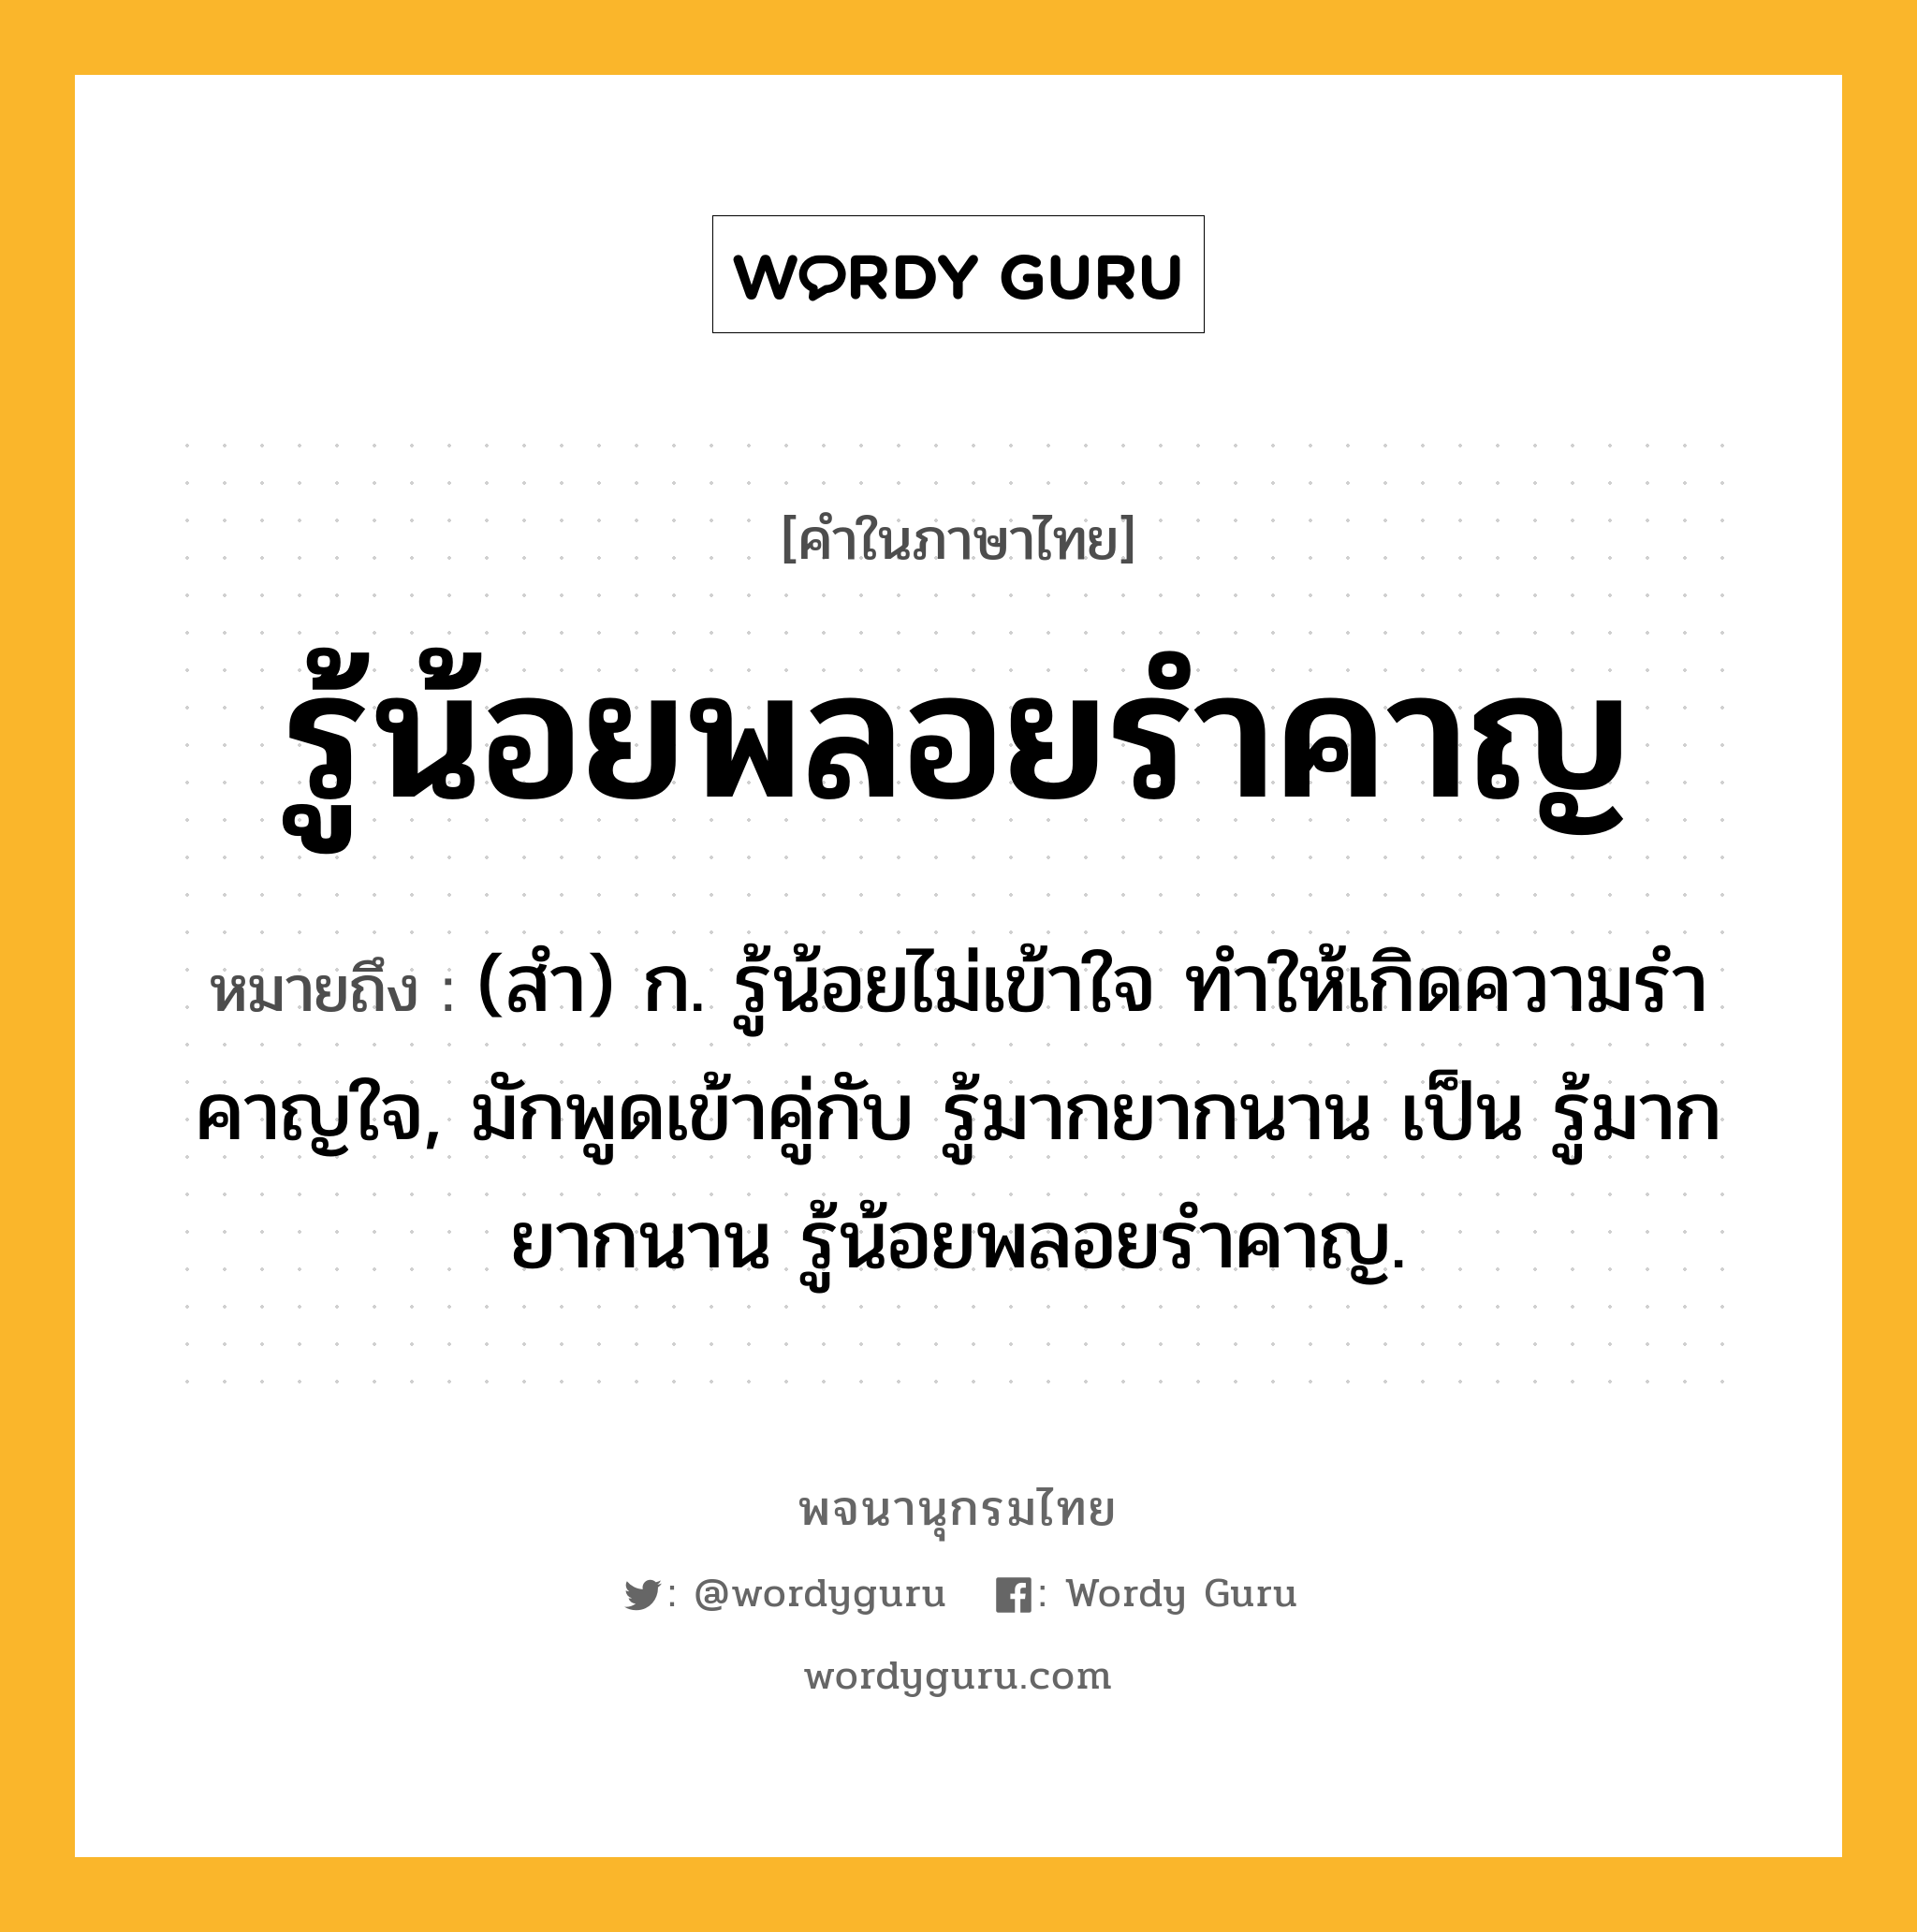 รู้น้อยพลอยรำคาญ ความหมาย หมายถึงอะไร?, คำในภาษาไทย รู้น้อยพลอยรำคาญ หมายถึง (สํา) ก. รู้น้อยไม่เข้าใจ ทําให้เกิดความรําคาญใจ, มักพูดเข้าคู่กับ รู้มากยากนาน เป็น รู้มากยากนาน รู้น้อยพลอยรําคาญ.